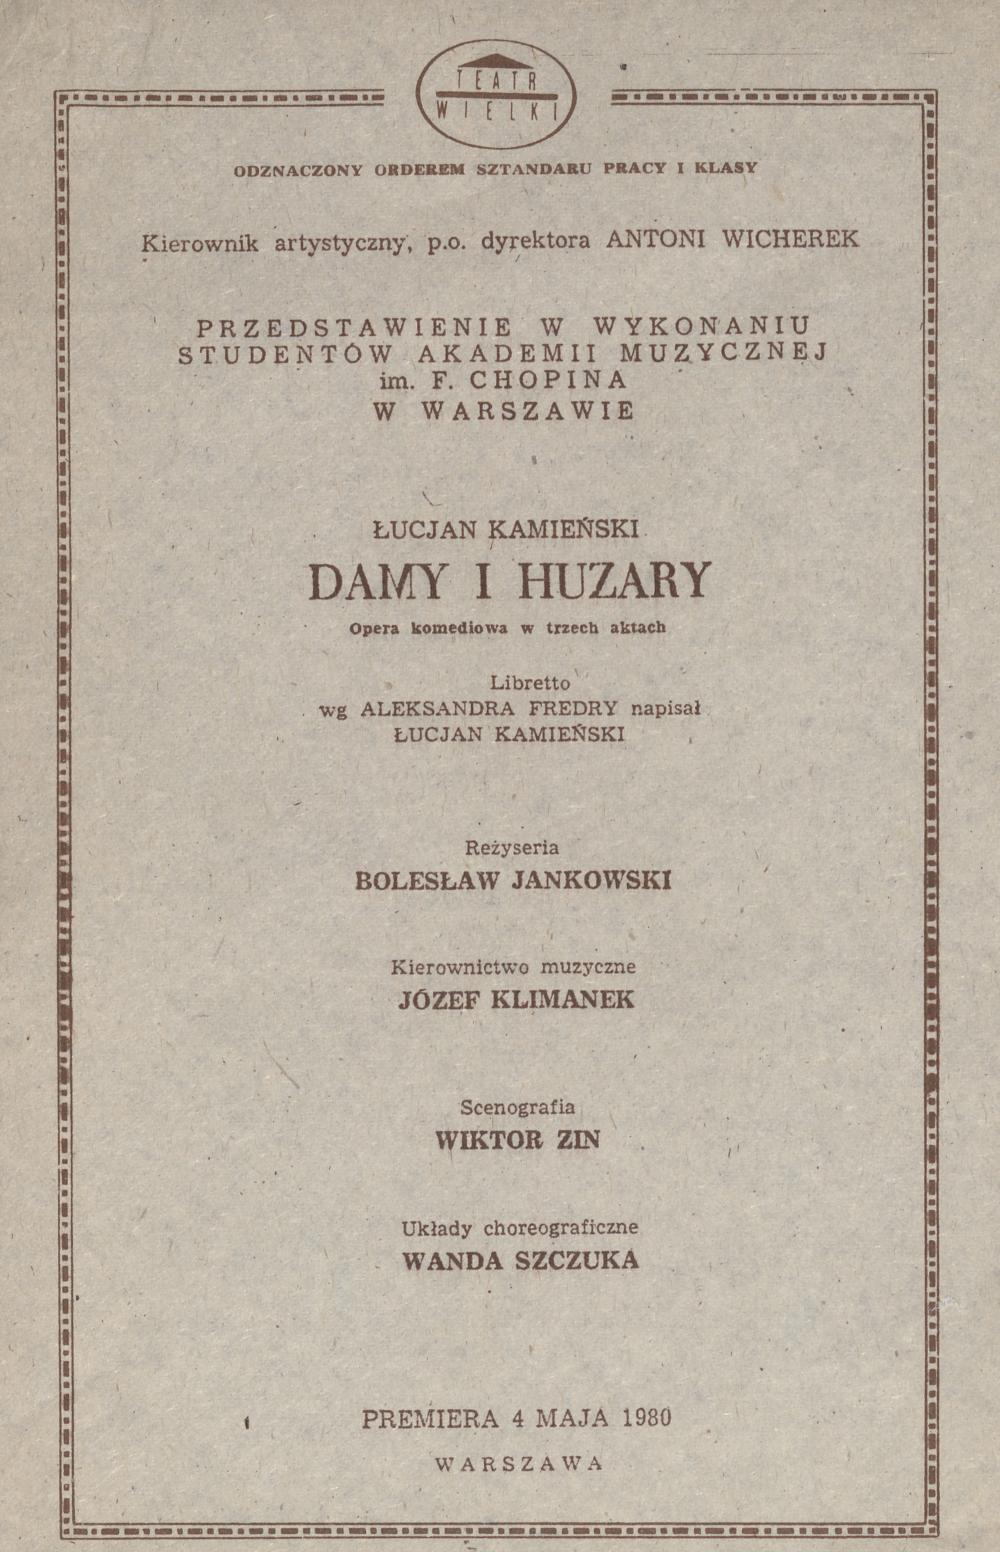 Wkładka Obsadowa „Damy i Huzary” 04-05-1980